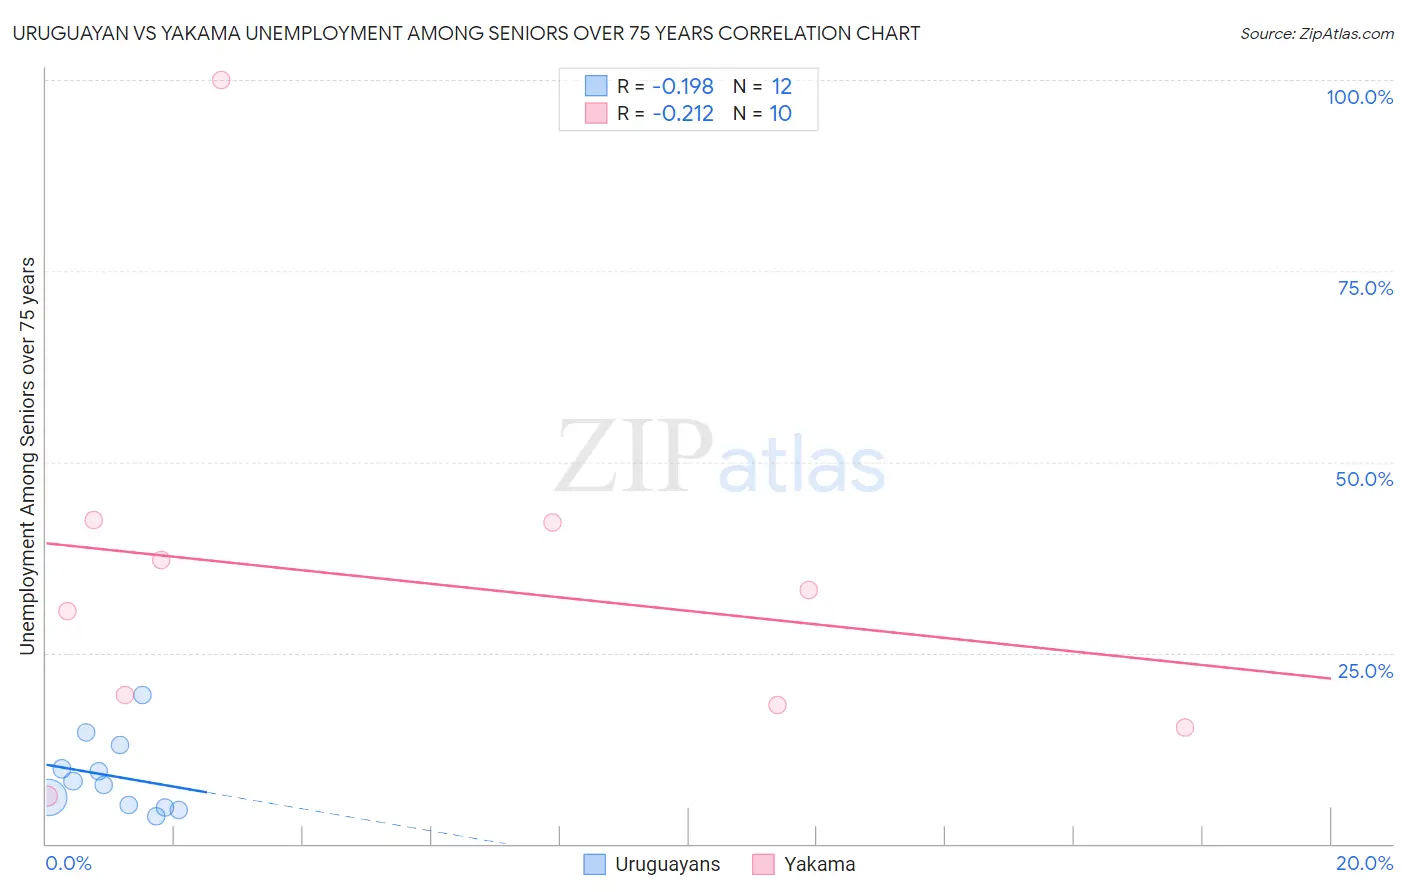 Uruguayan vs Yakama Unemployment Among Seniors over 75 years